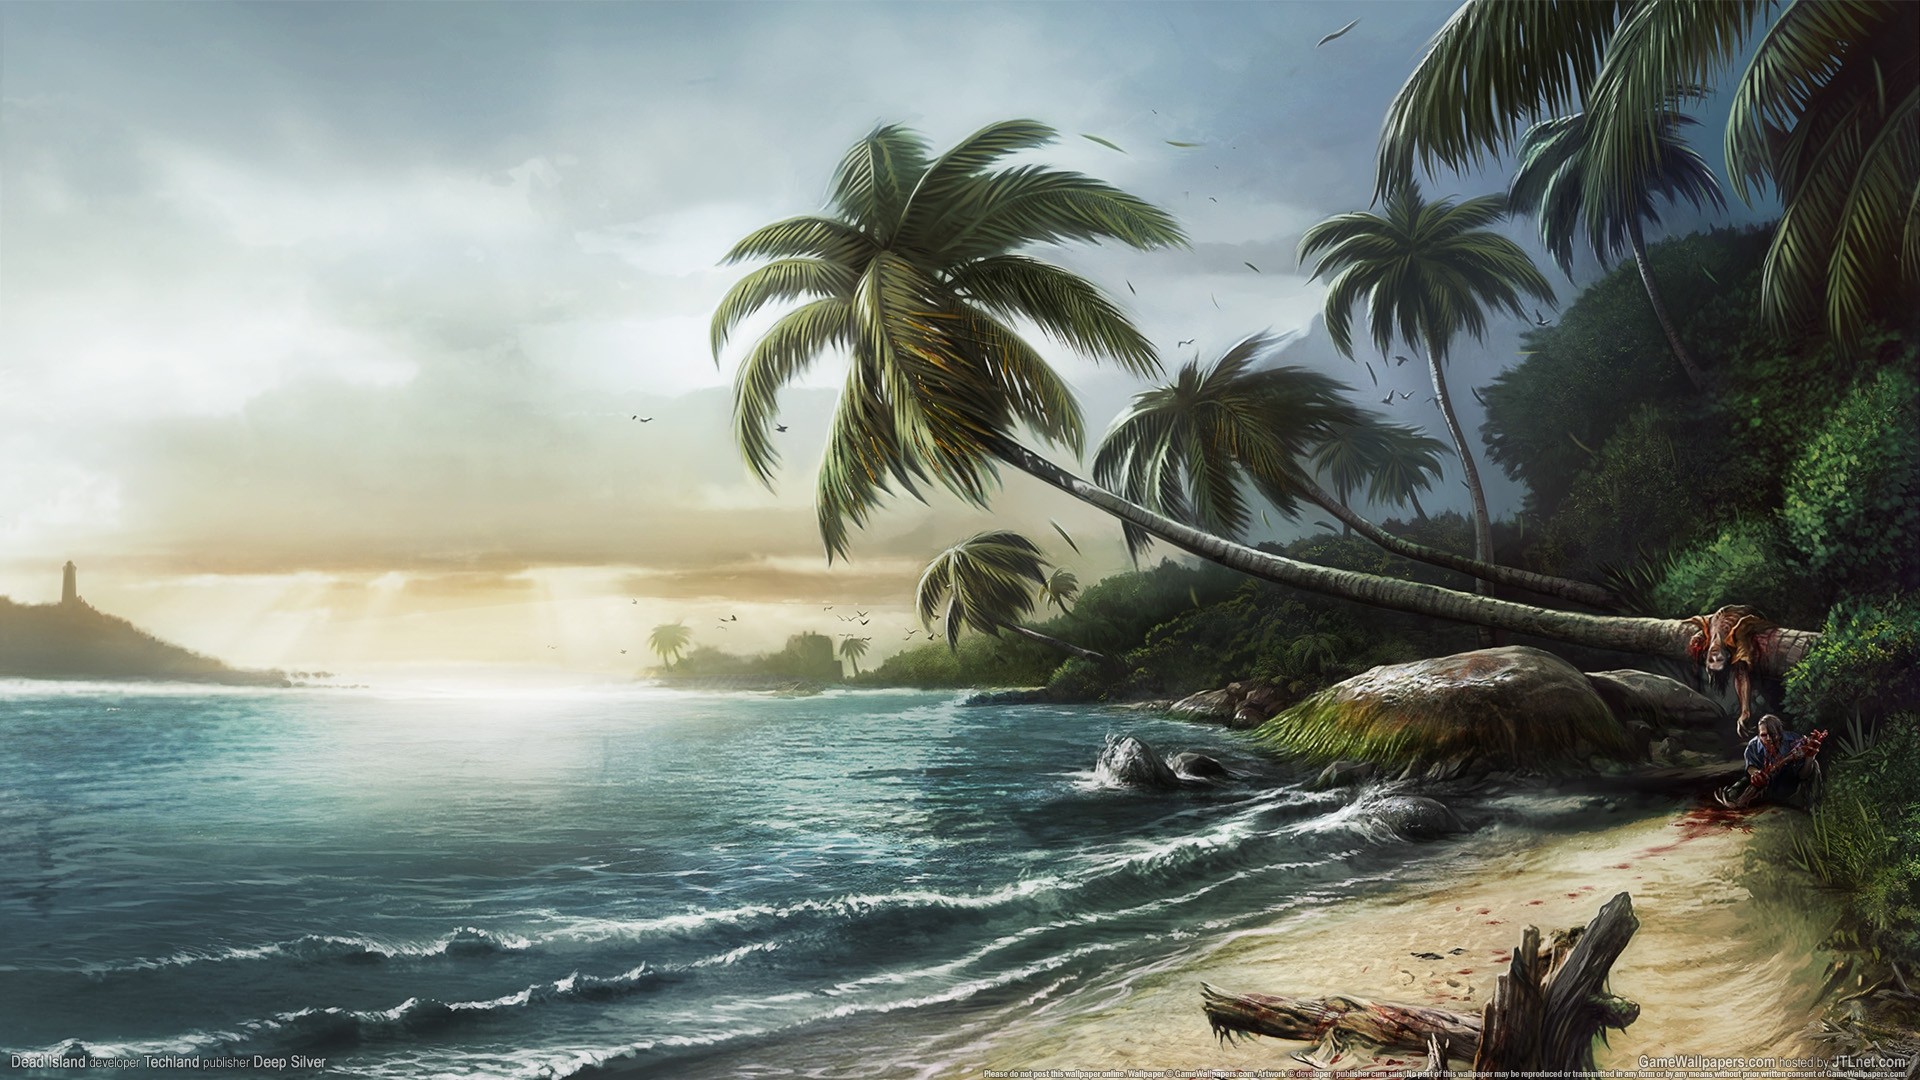 Descarga gratis la imagen Videojuego, Dead Island en el escritorio de tu PC